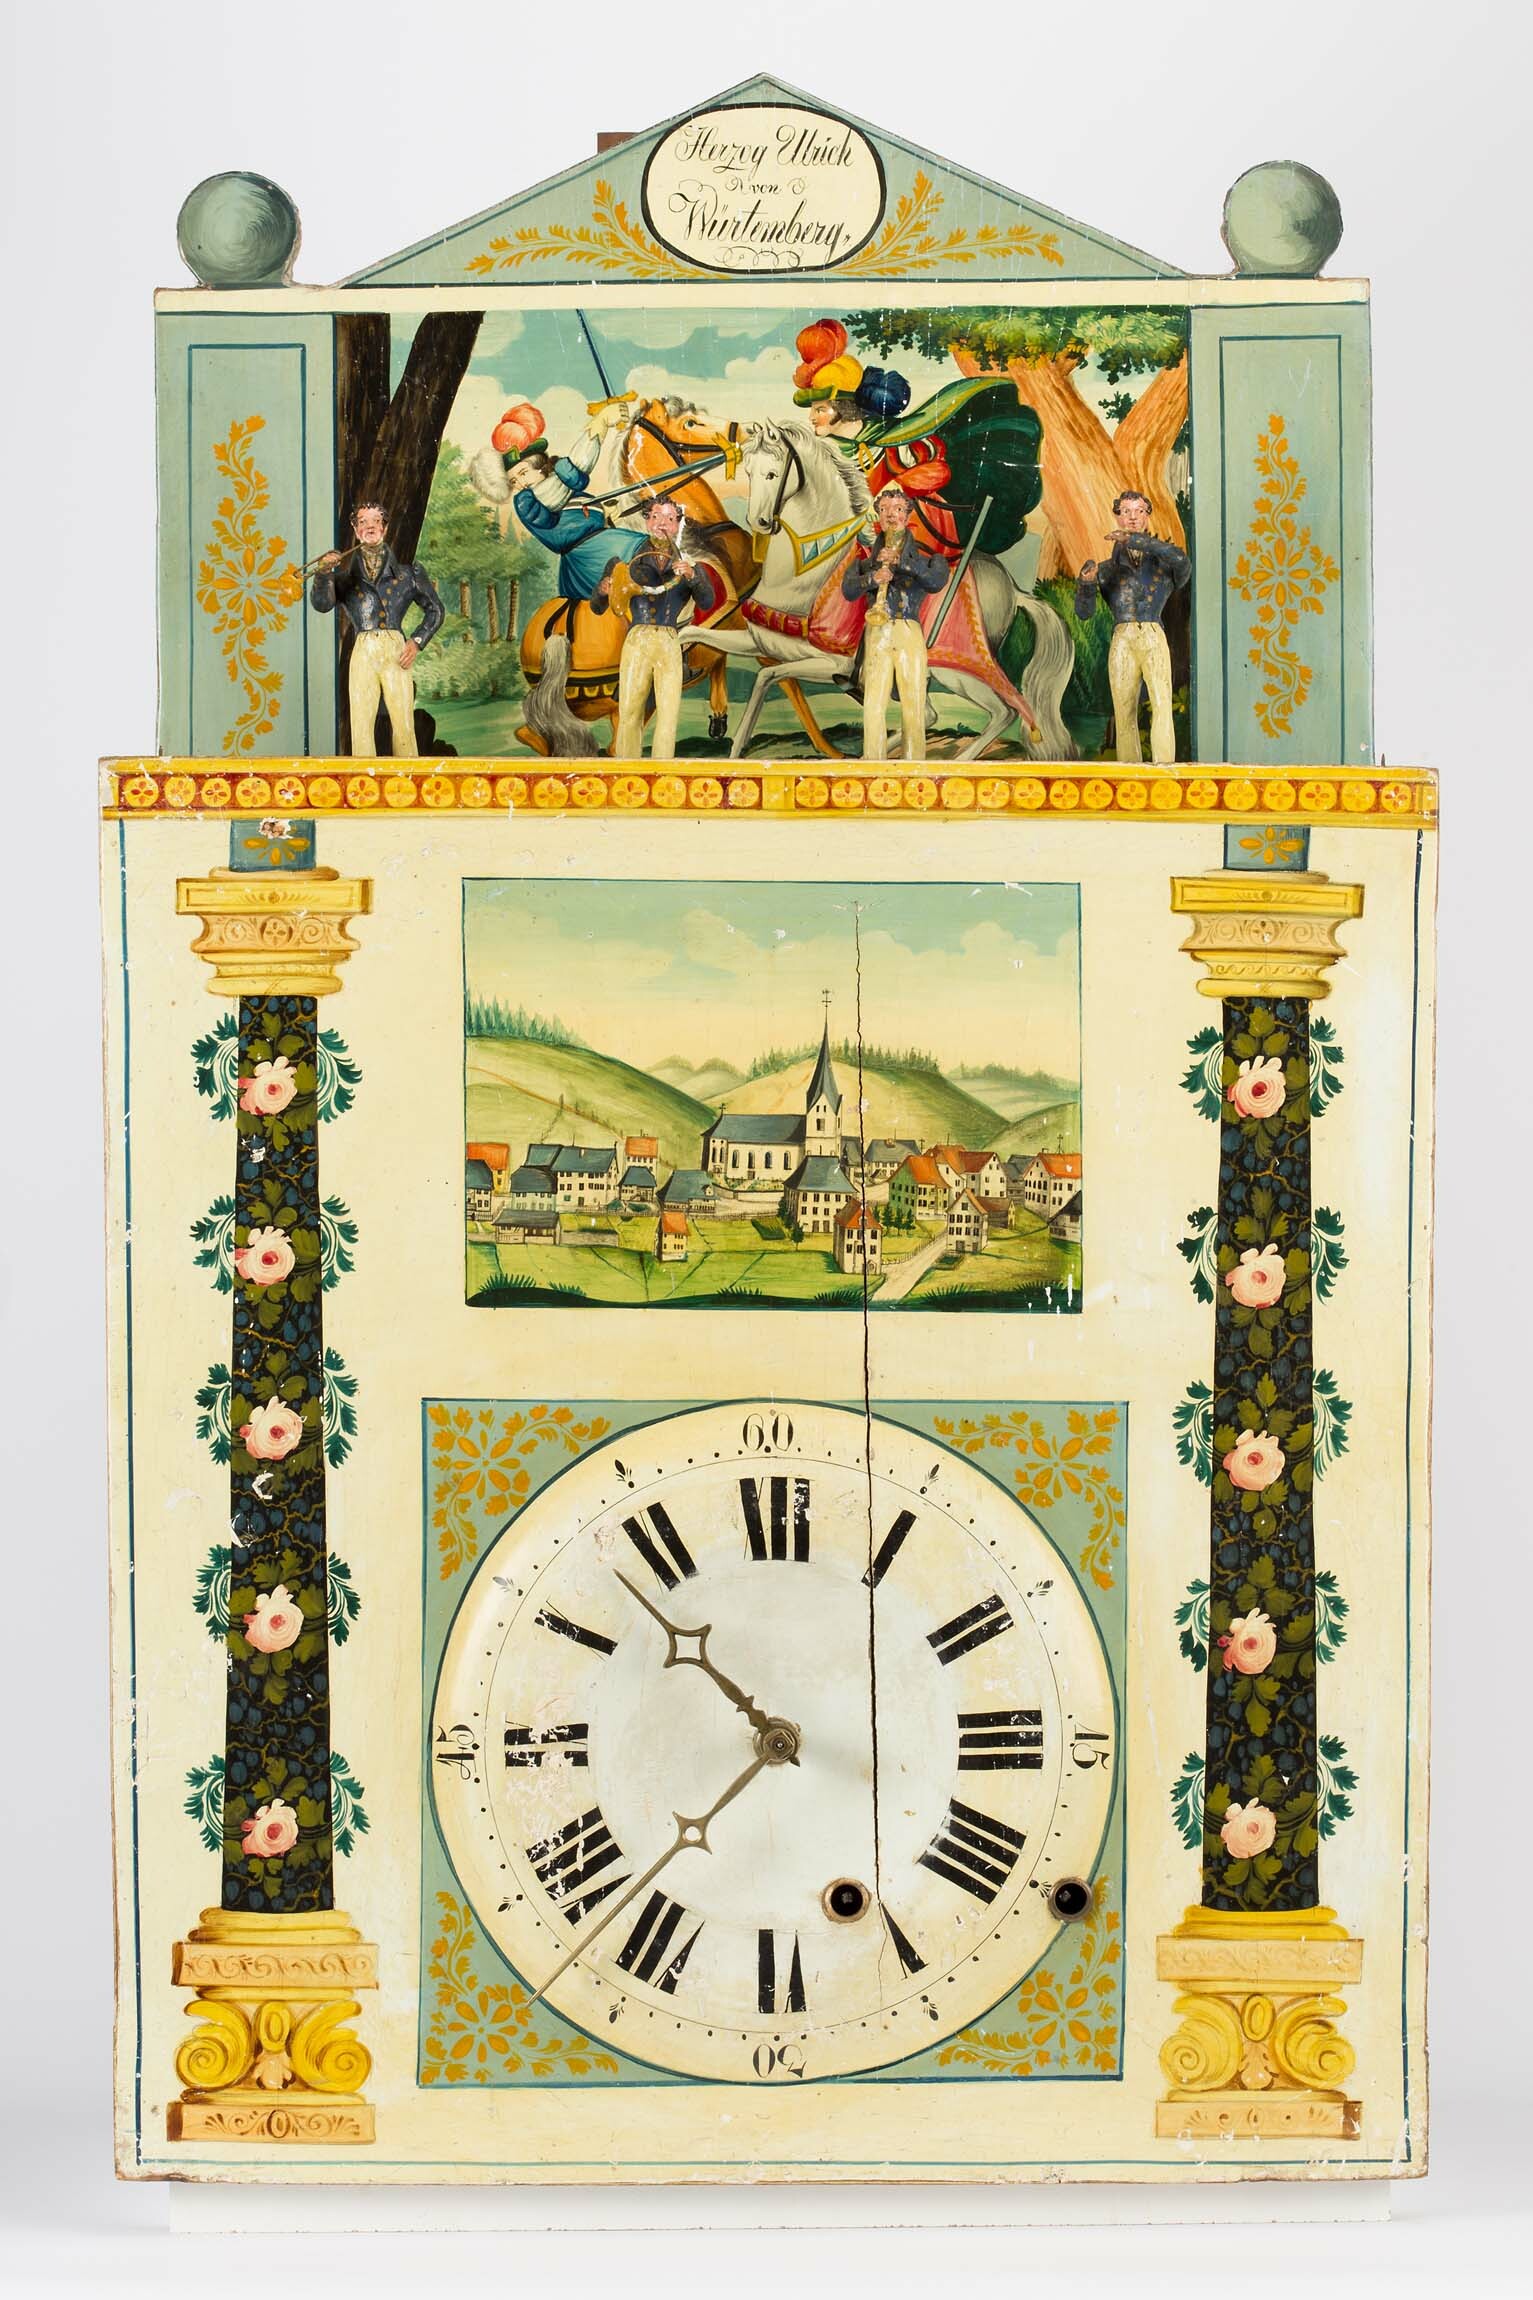 Flötenuhr mit Figurenautomat, Schwarzwald, um 1840 (Deutsches Uhrenmuseum CC BY-SA)